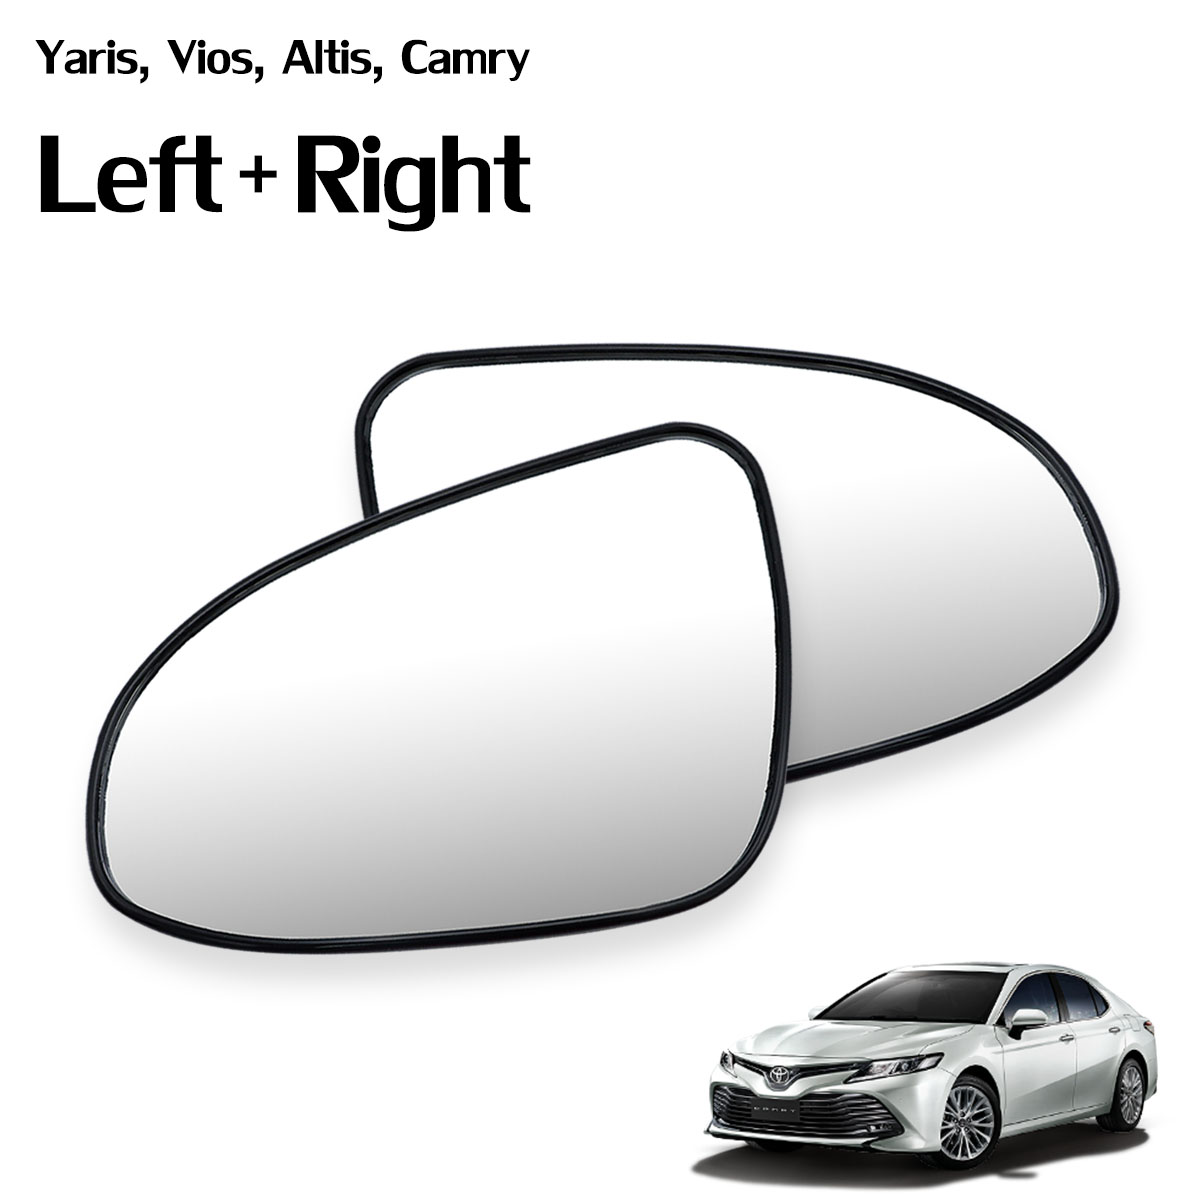 เนื้อเลนส์กระจก ข้าง ขวา+ซ้าย  ใส่ Toyota Vios Altis Yaris Camry ปี 2014 - 2019 RH +Lh  Wing Side Door Mirror Glass Len Yaris Vios Altis Camry Toyota